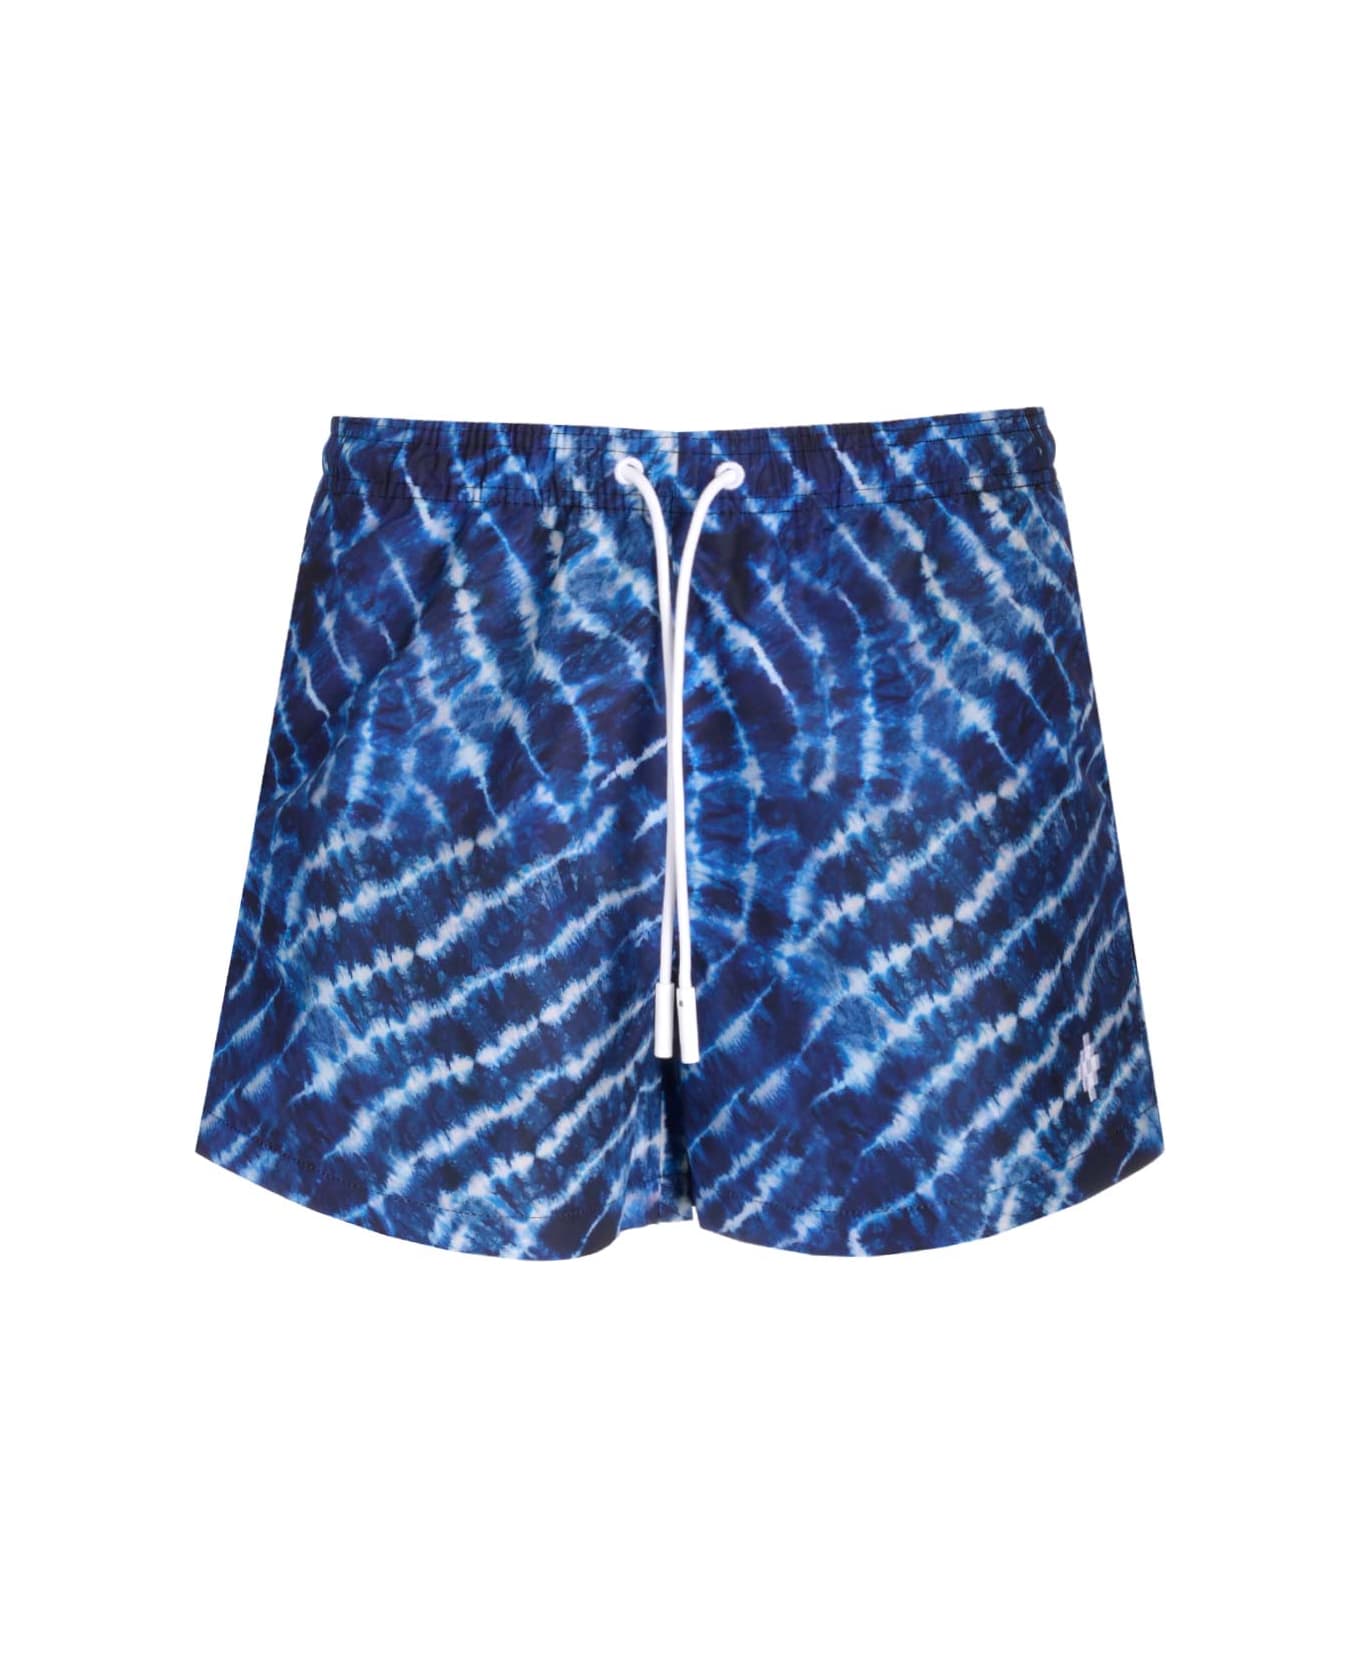 Marcelo Burlon 'soundwaves' Swim Shorts - Blue